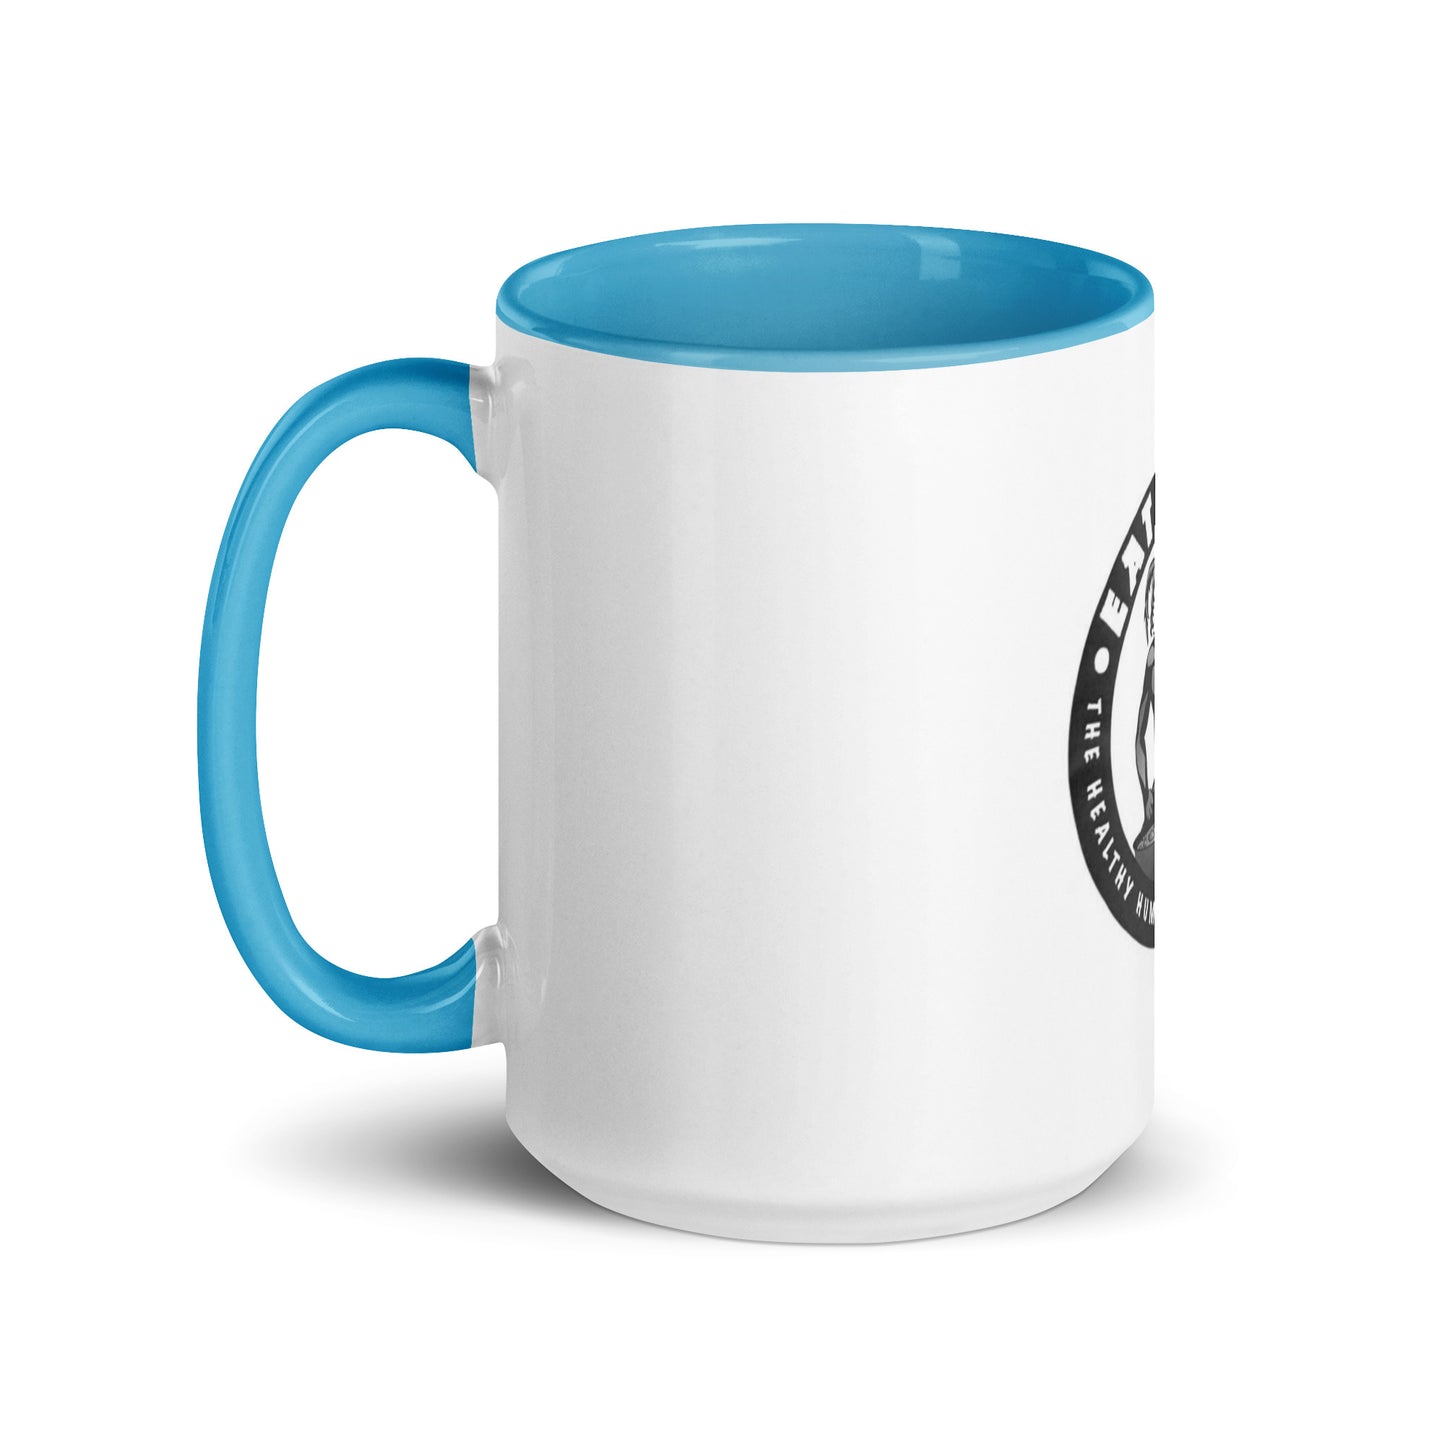 Mug with Color Inside -The Hufu Mug